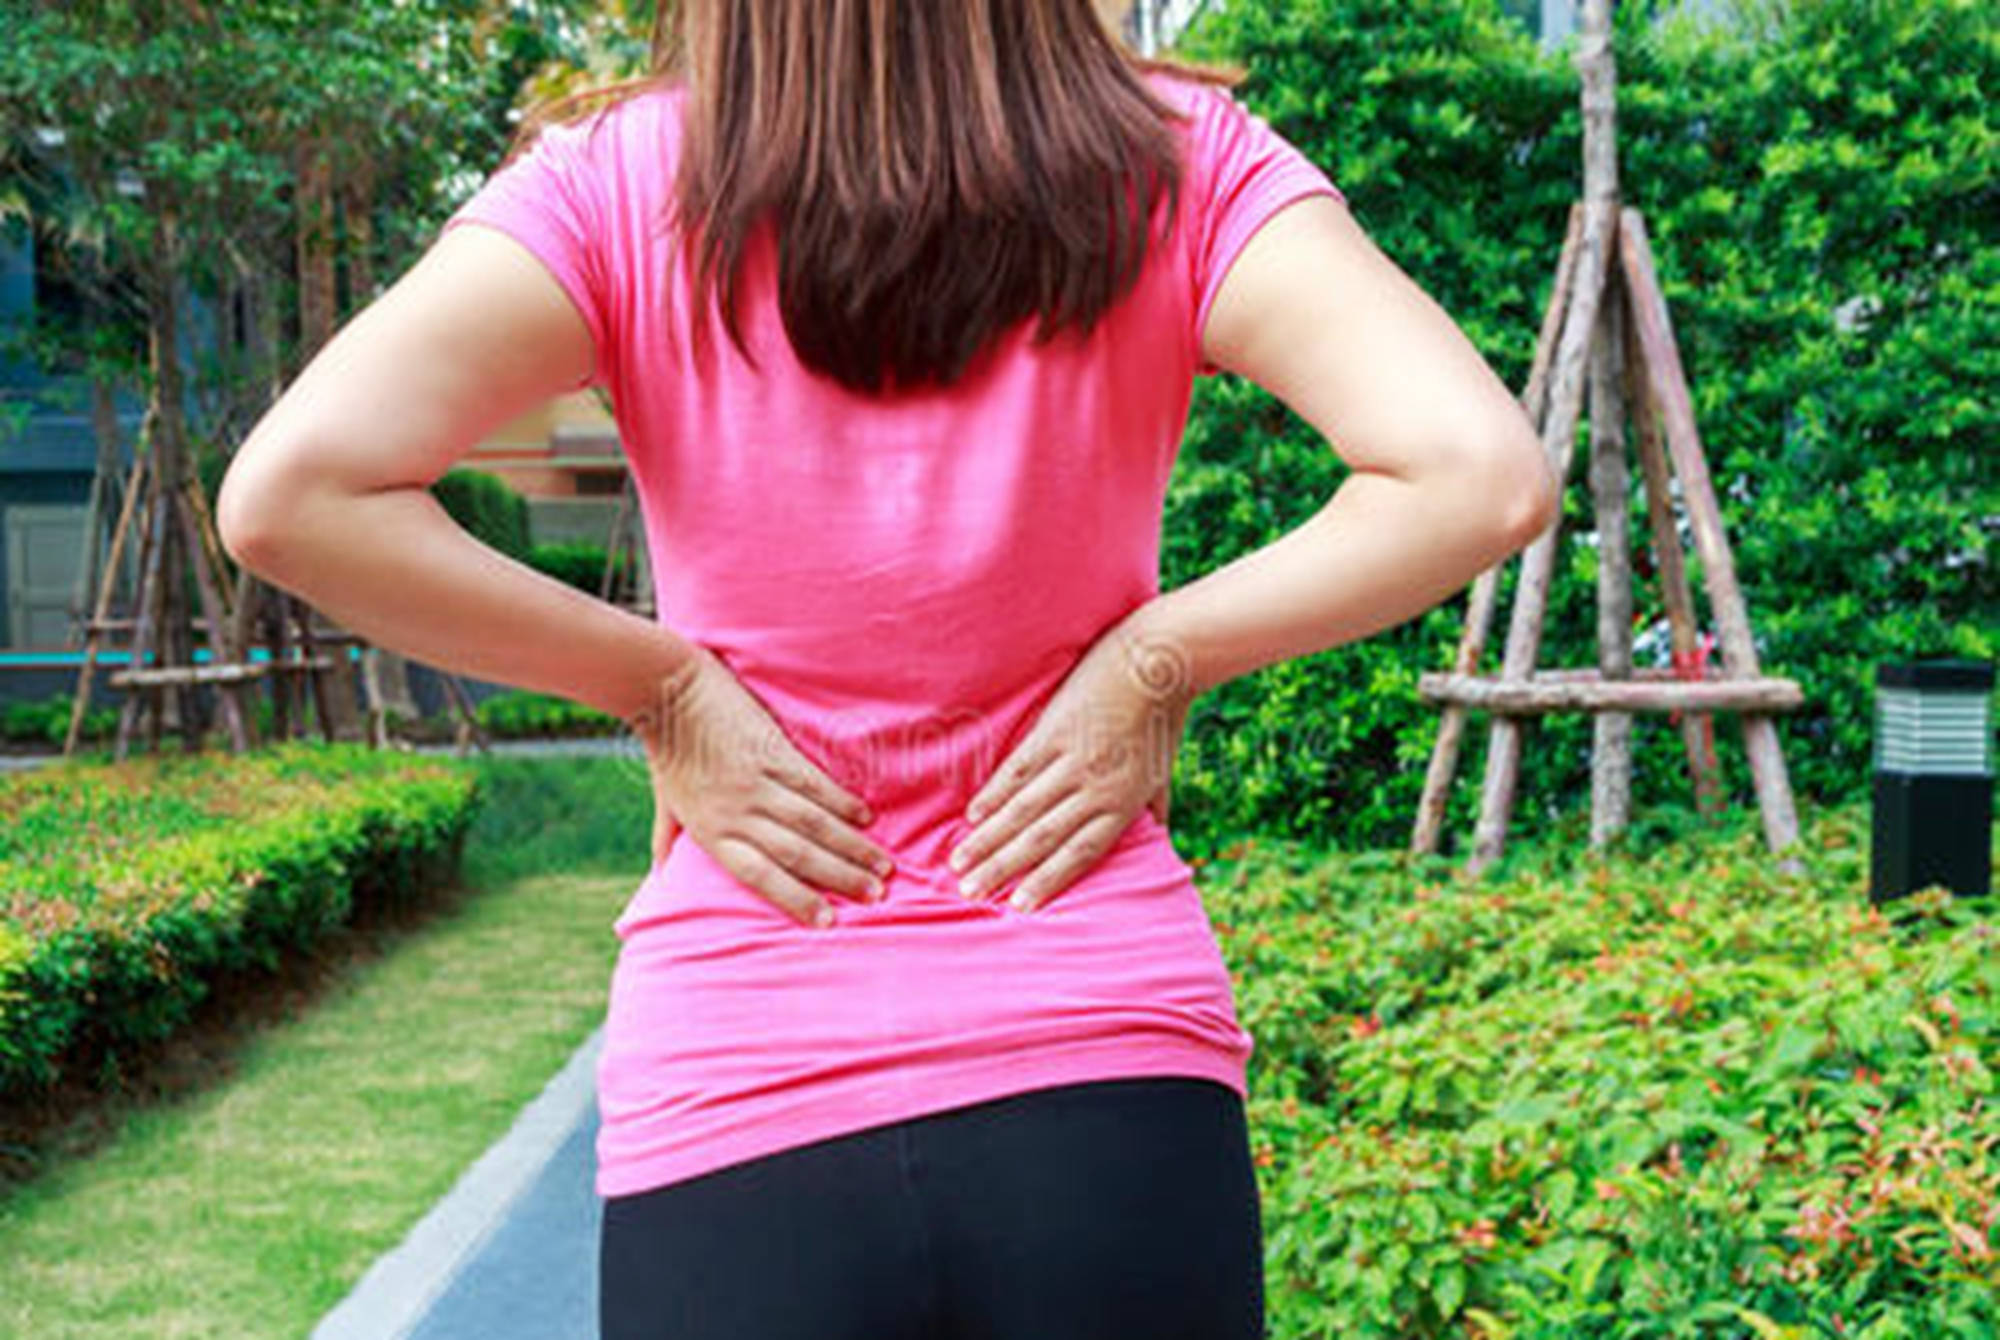 原创女性产后腰疼多半离不开这五种原因三种方法教你避免腰部损伤